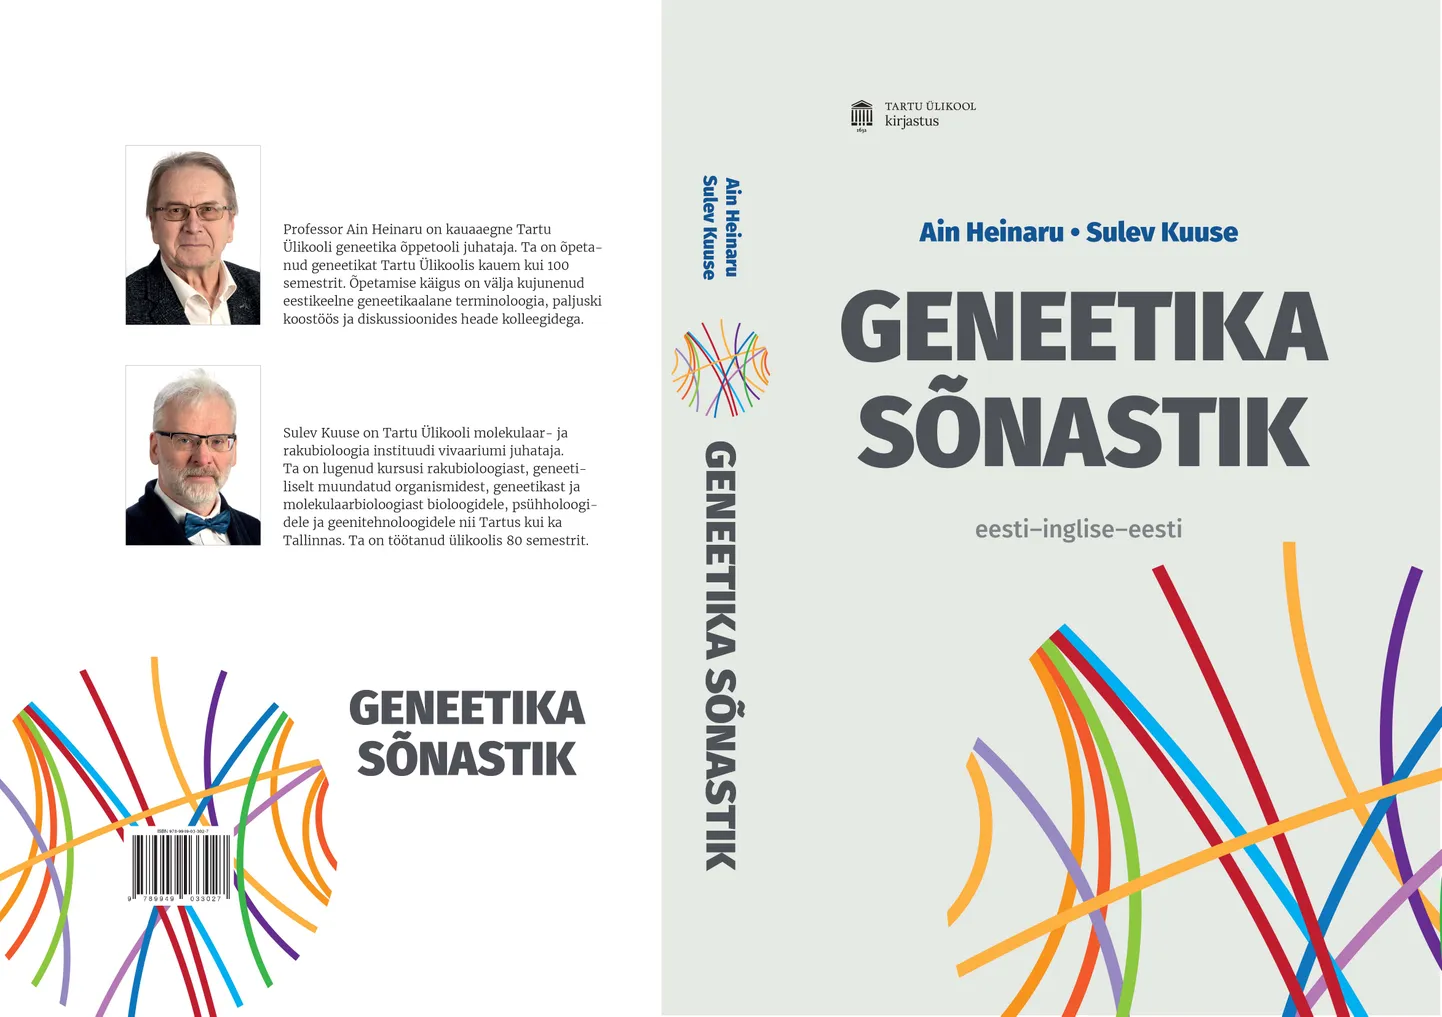 «Geneetika sõnastiku» taga- ja esikaane kujundus.